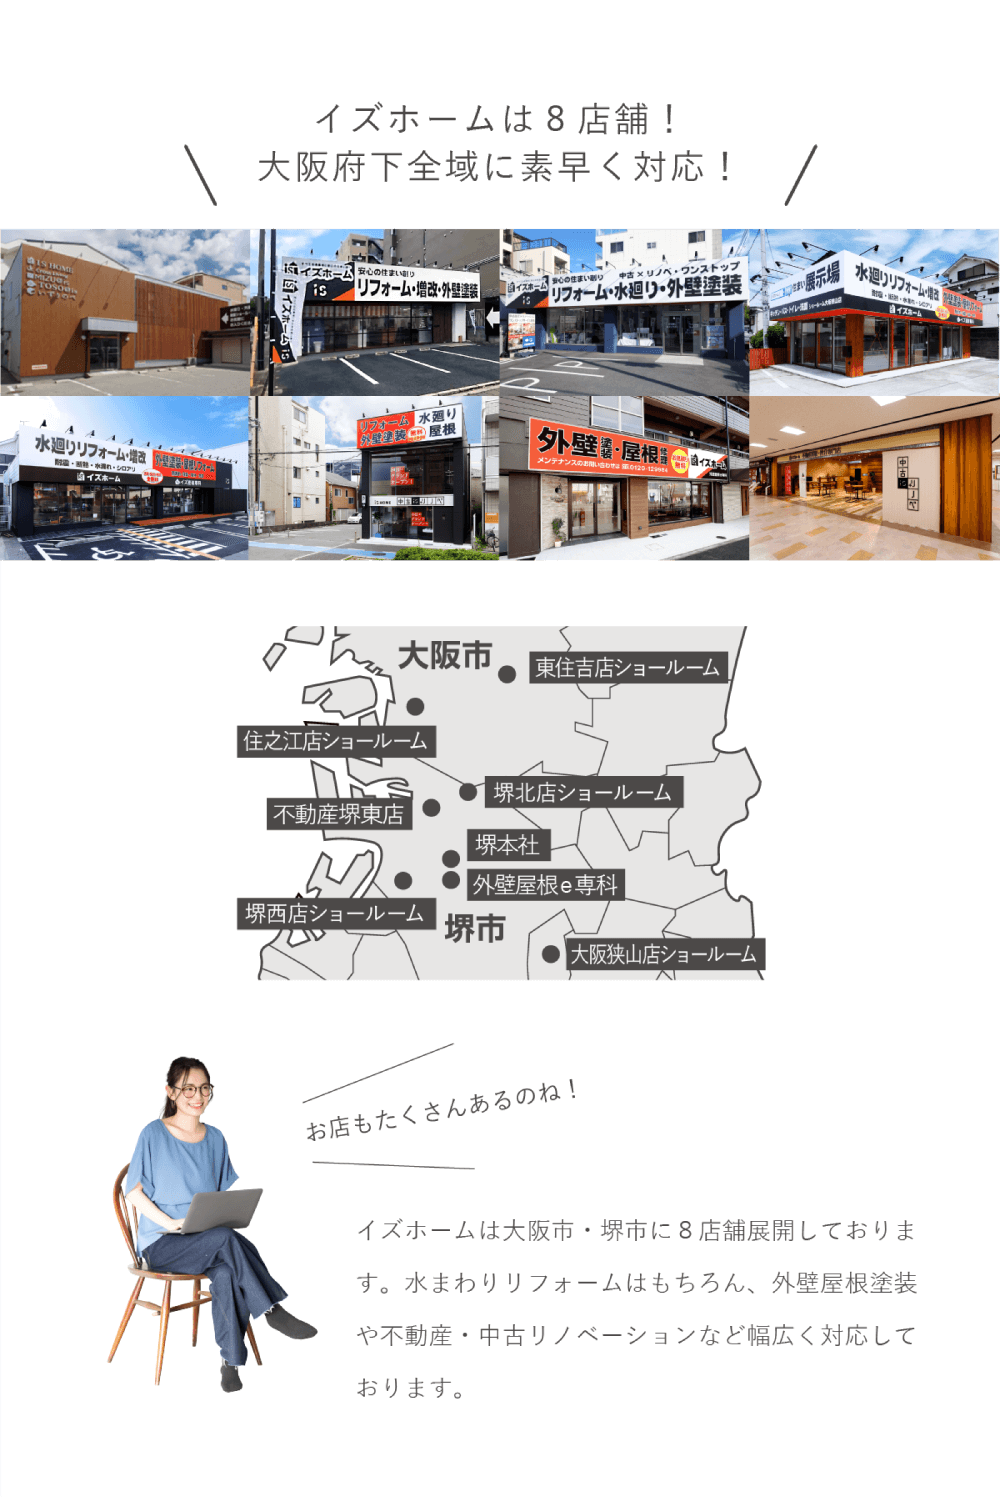 イズホームは8店舗！大阪府下全域に素早く対応！
      イズホームは大阪市・堺市に8店舗展開しております。
      水まわりリフォームはもちろん、外壁屋根塗装や不動産・中古リノベーションなど幅広く対応しております。